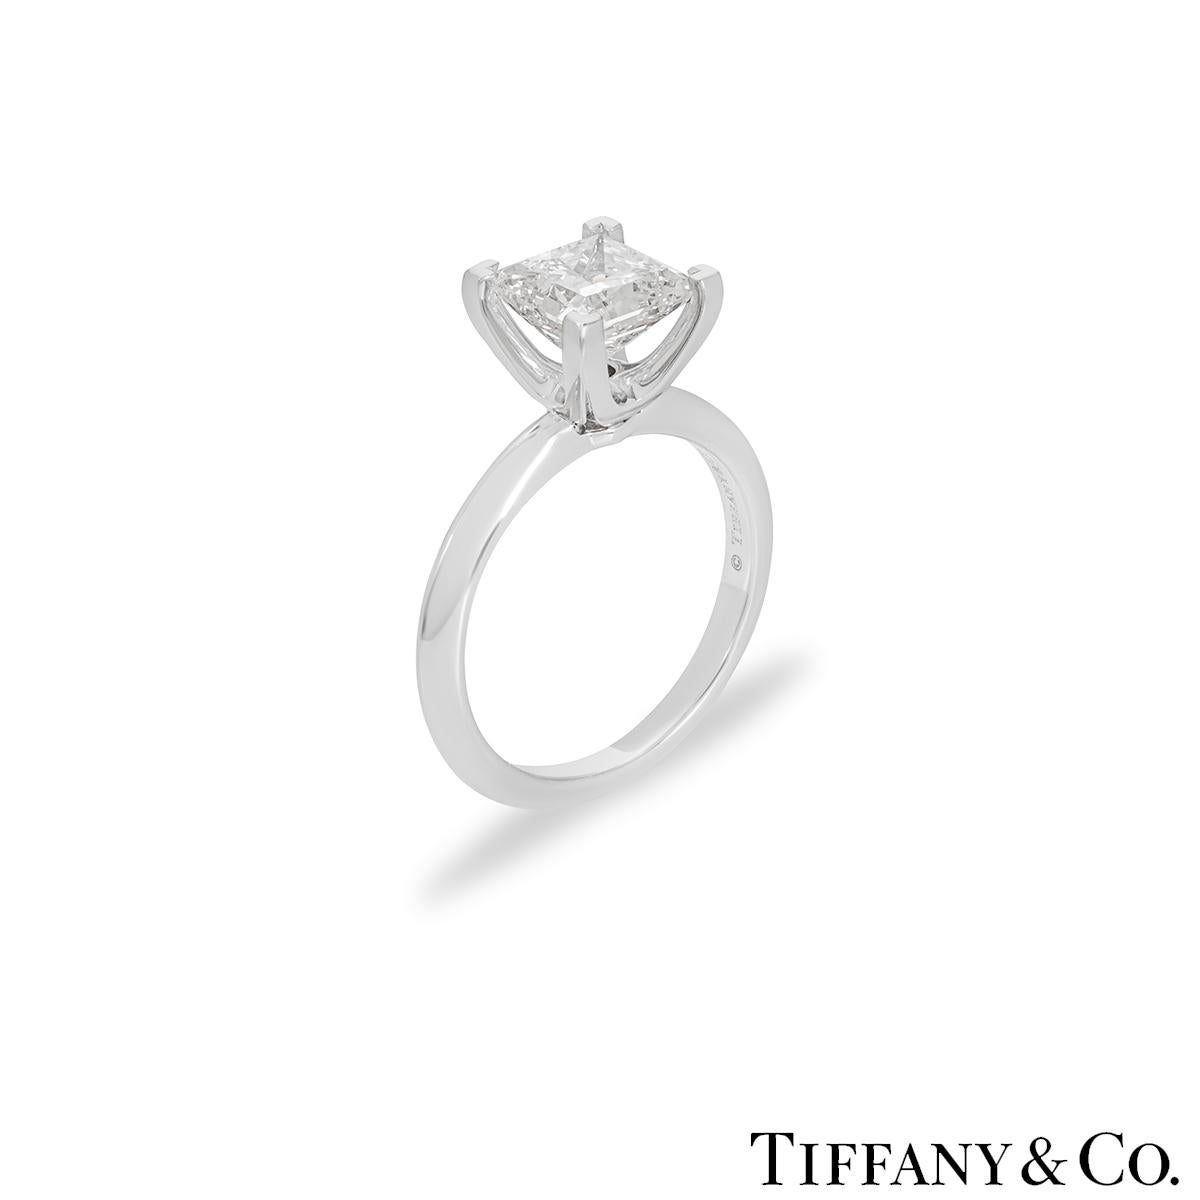 Ein schöner Platin-Diamantring von Tiffany & Co. Der Ring besteht aus einem Diamanten im Princess-Schliff in einer 4-Krallen-Fassung mit einem Gesamtgewicht von 2,04ct, Farbe F und Reinheit VS1. Der Diamant erhält in allen drei Aspekten - Schliff,